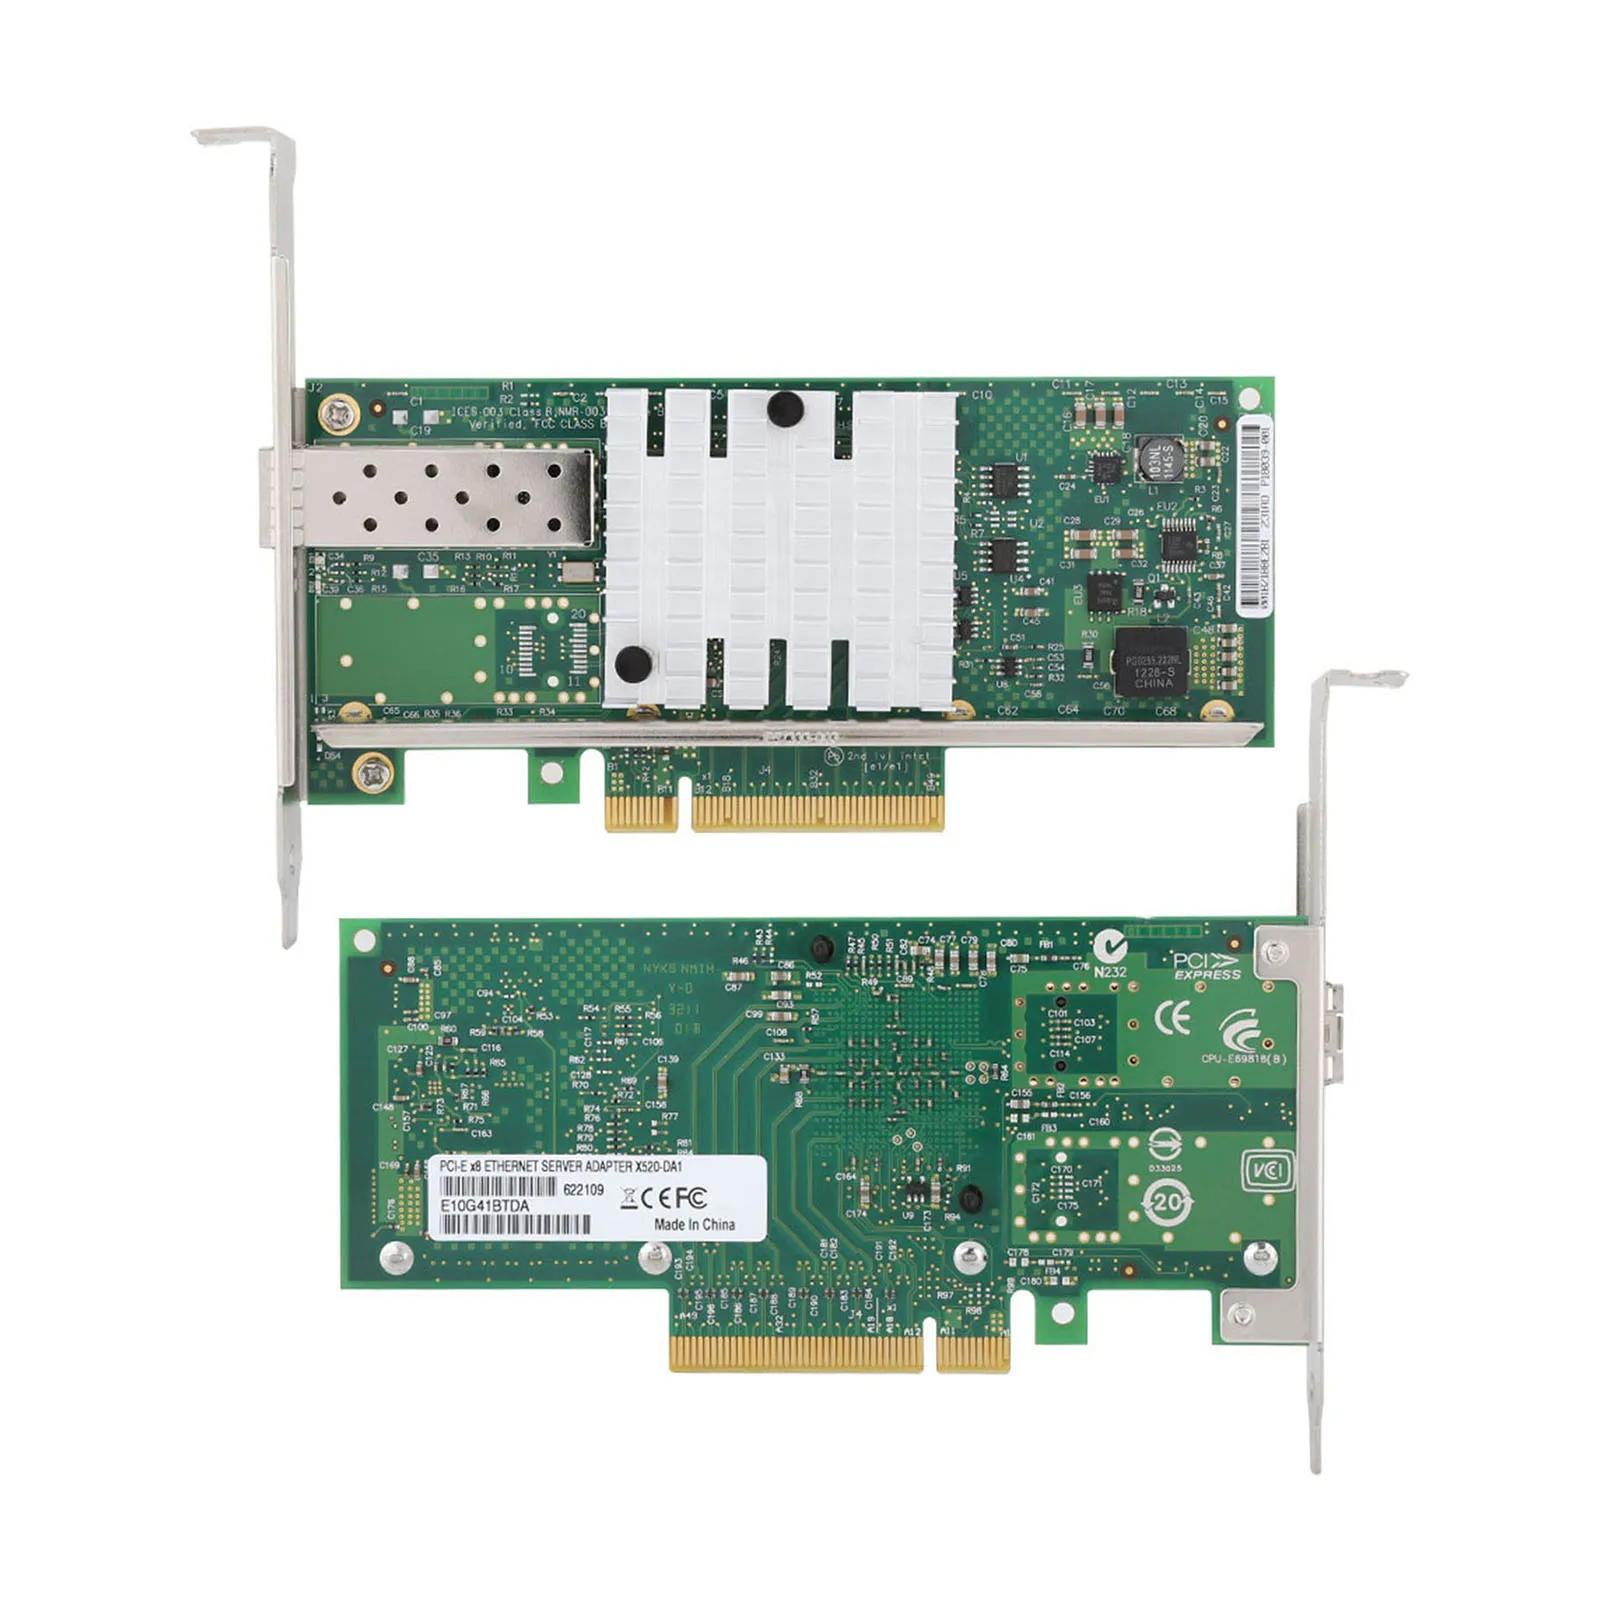 

INTEL X520-DA1 82599EN PCI-E 10G SFP волоконно-оптические сетевые карты для E10G41BTDA конвергентный сетевой адаптер для 10GBE X520-DA1